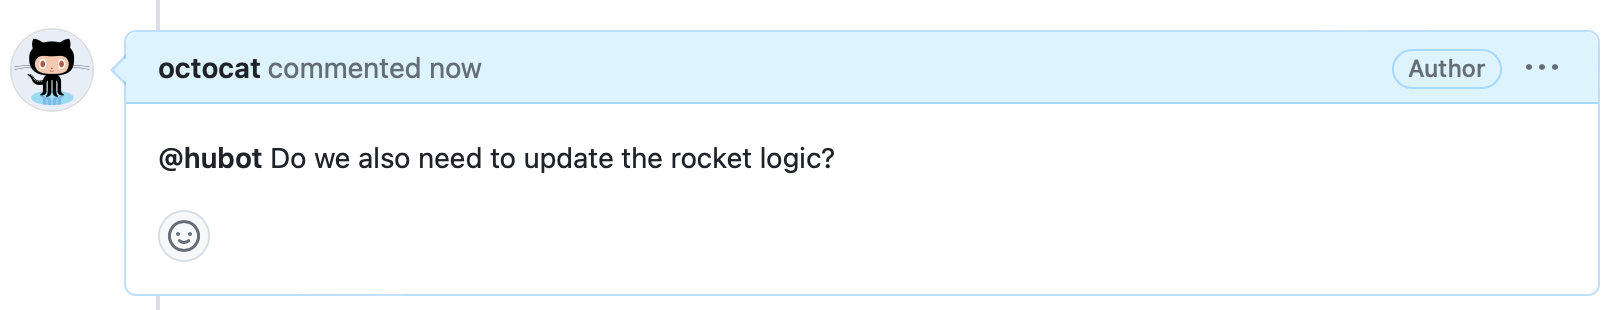 Снимок экрана: комментарий о проблеме. Заголовок говорит "октокат комментировал сейчас", и тело говорит: "@hubot Нам также нужно обновить логику ракеты?"